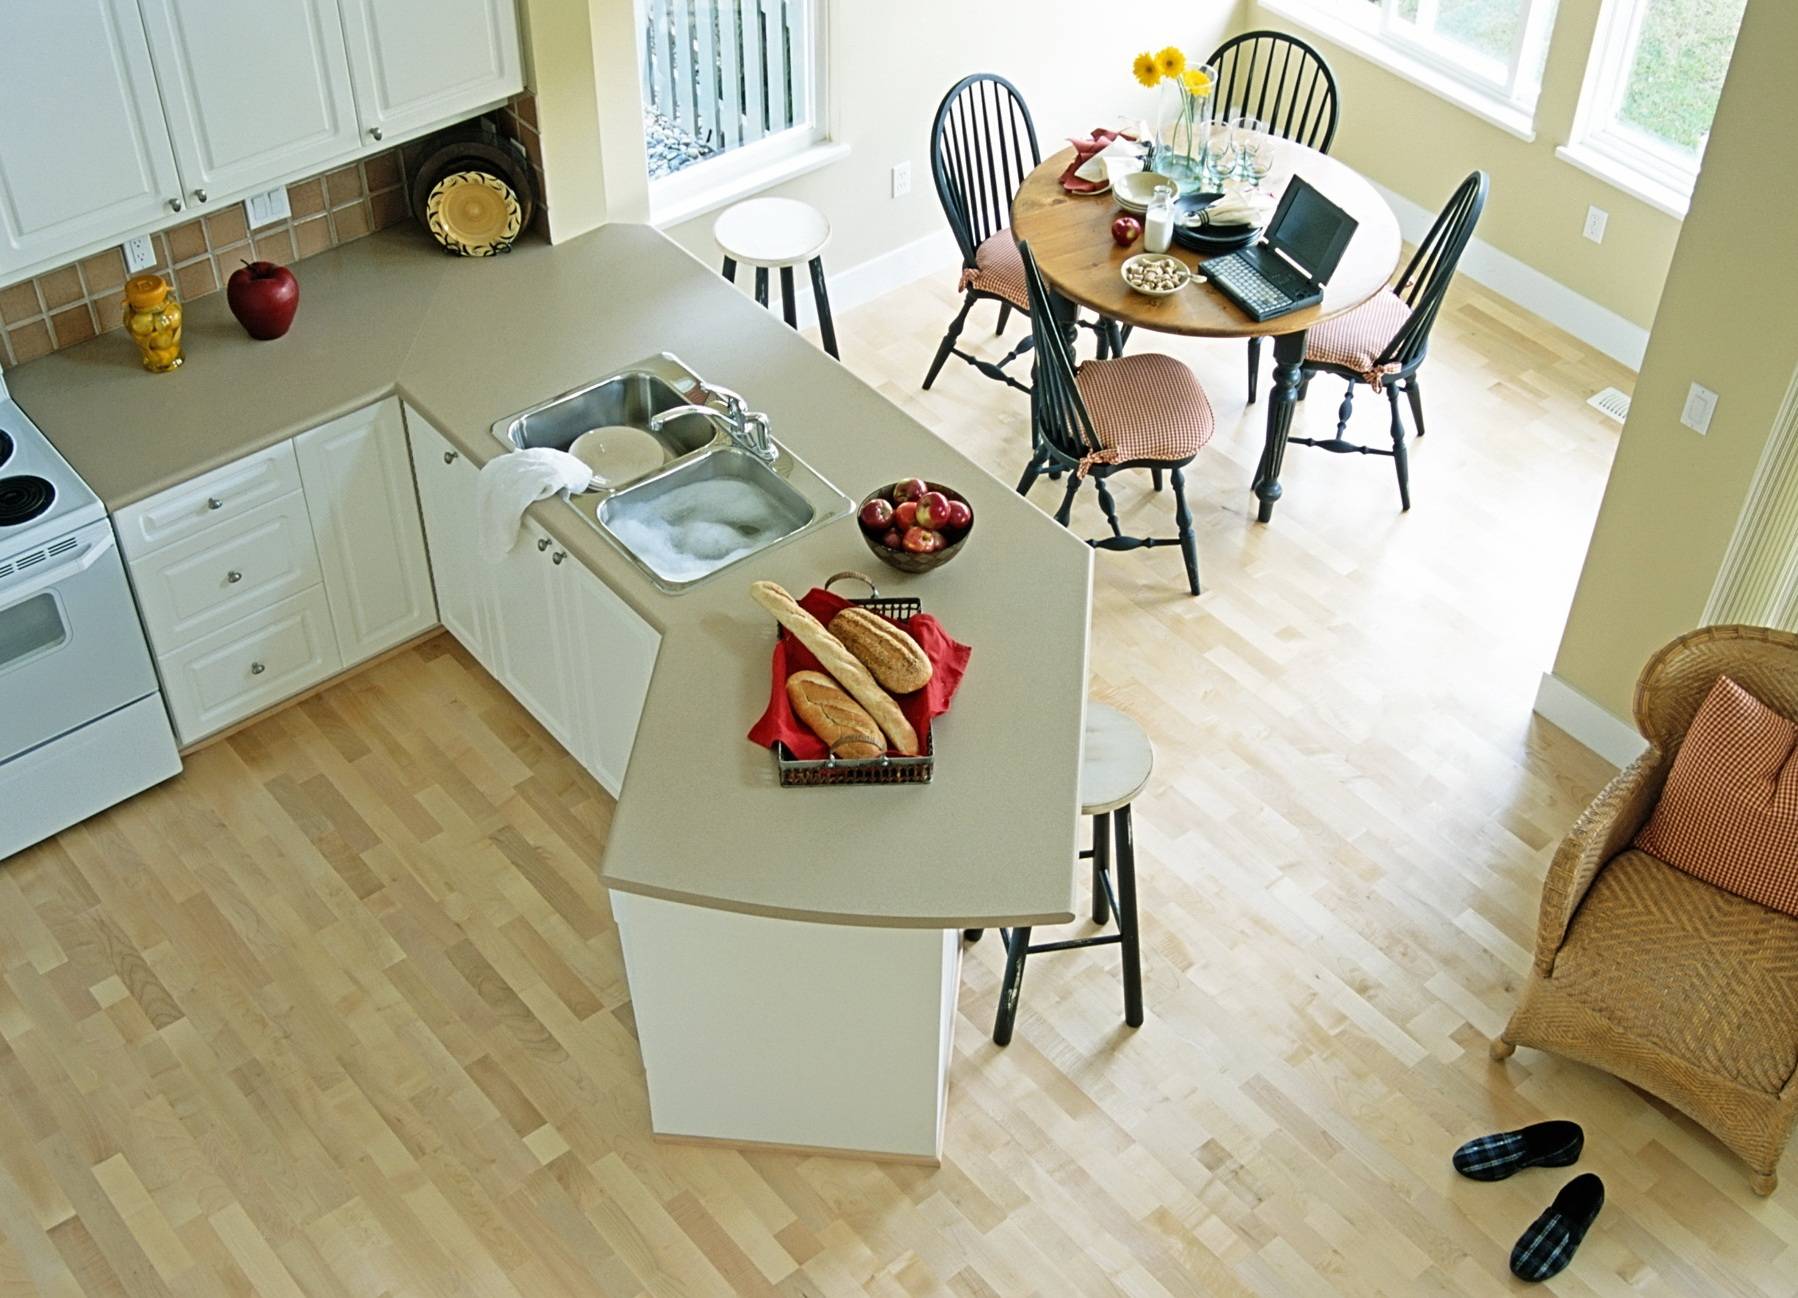 Пол на кухне: что лучше и какой сделать, советы по выбору напольного покрытия